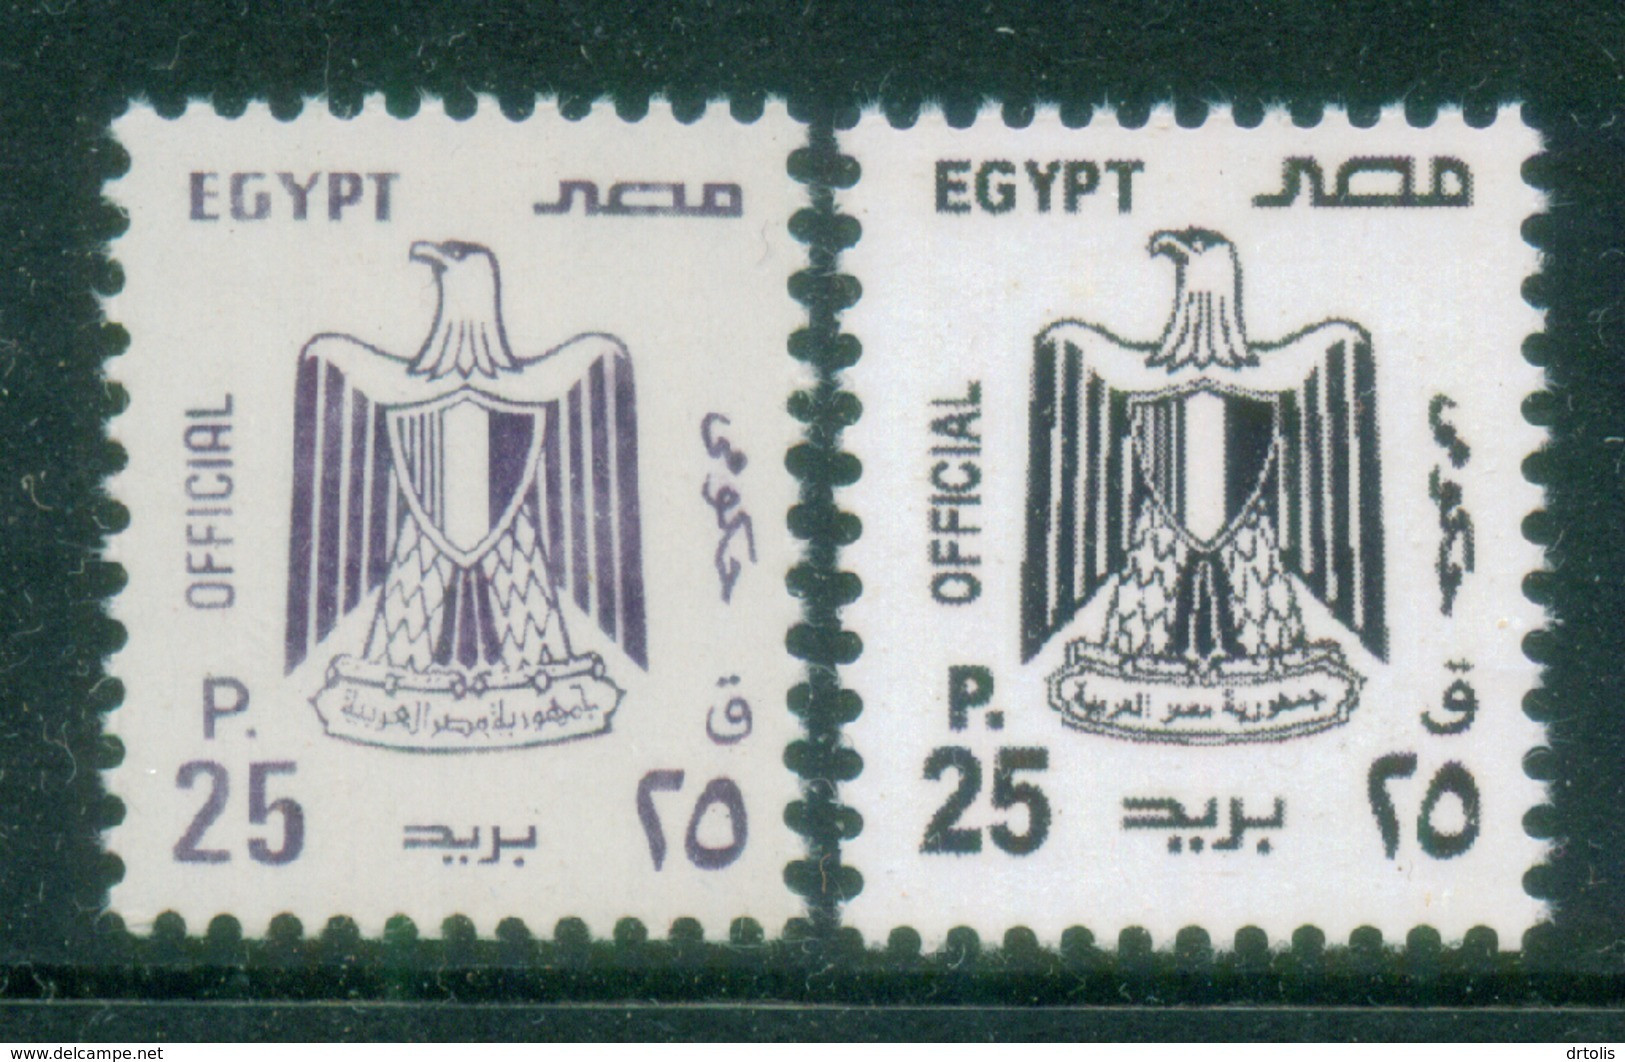 EGYPT / 2001 / OFFICIAL / 25 PT / NO WMK / VERY RARE : TYPE I & II / MNH / VF - Nuevos